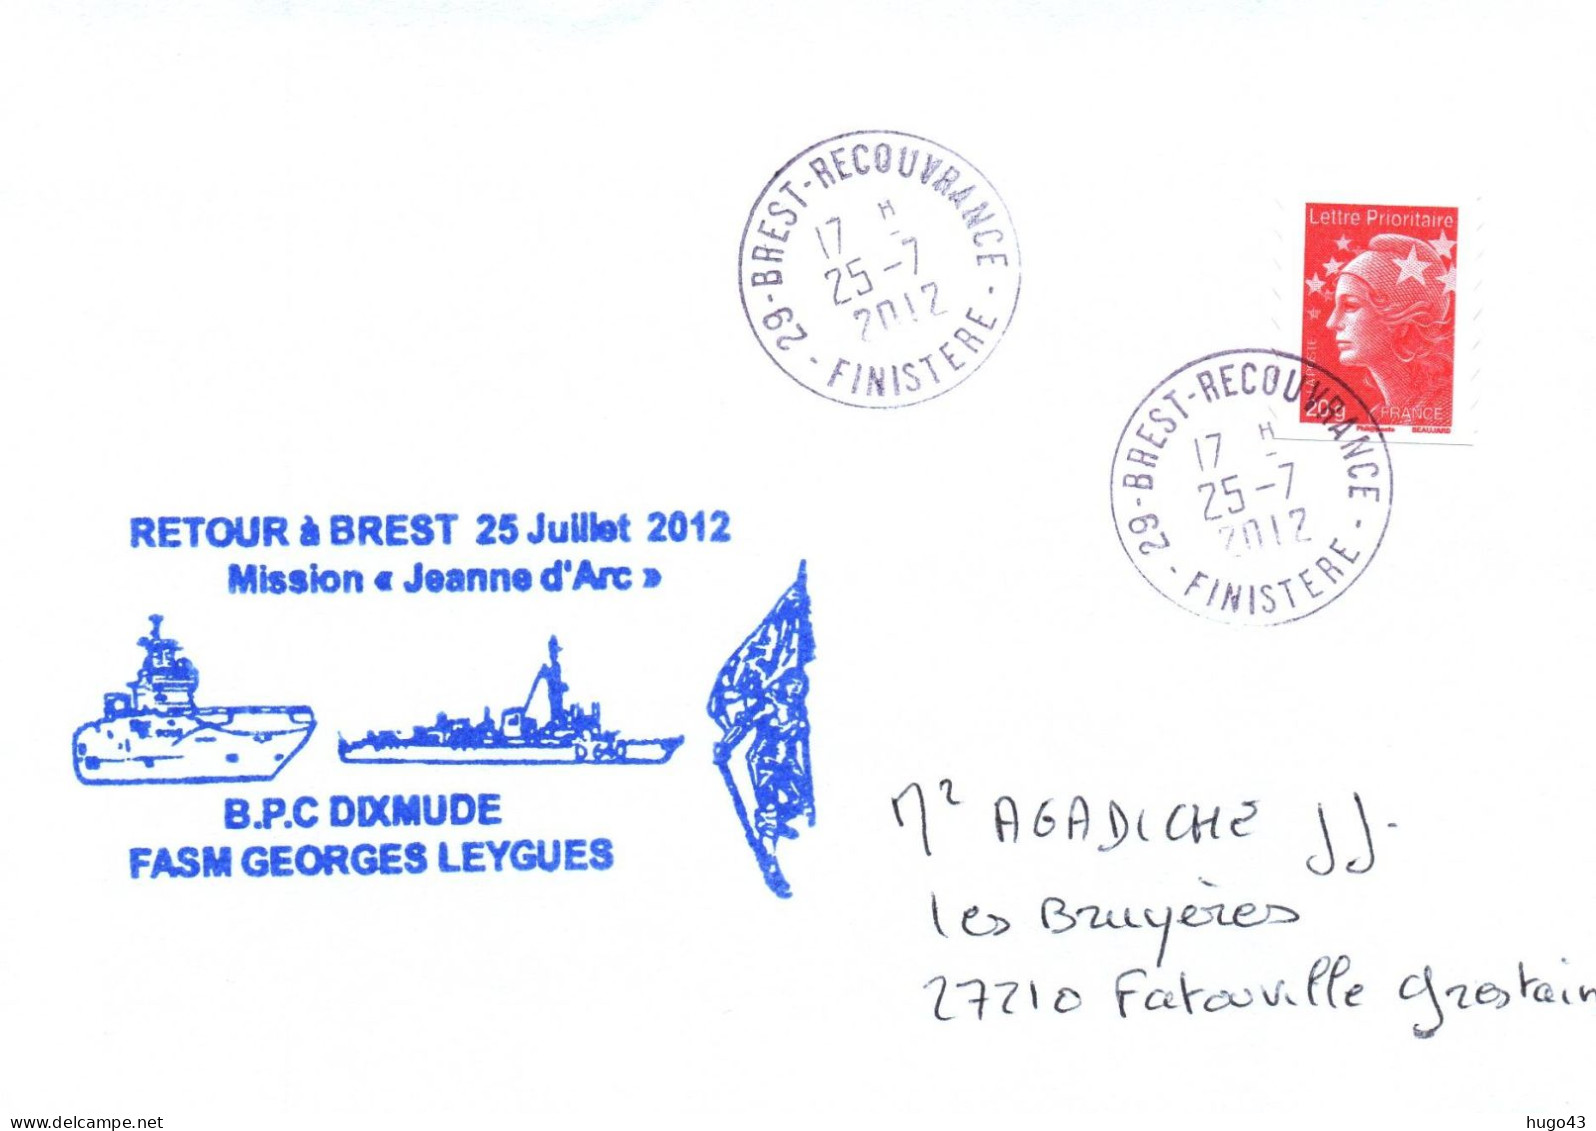 ENVELOPPE AVEC CACHET BPC DIXMUDE - RETOUR A BREST LE 25 JUILLET 2012 - MISSION JEANNE D' ARC - FASM GEORGES LEYGUES - Seepost